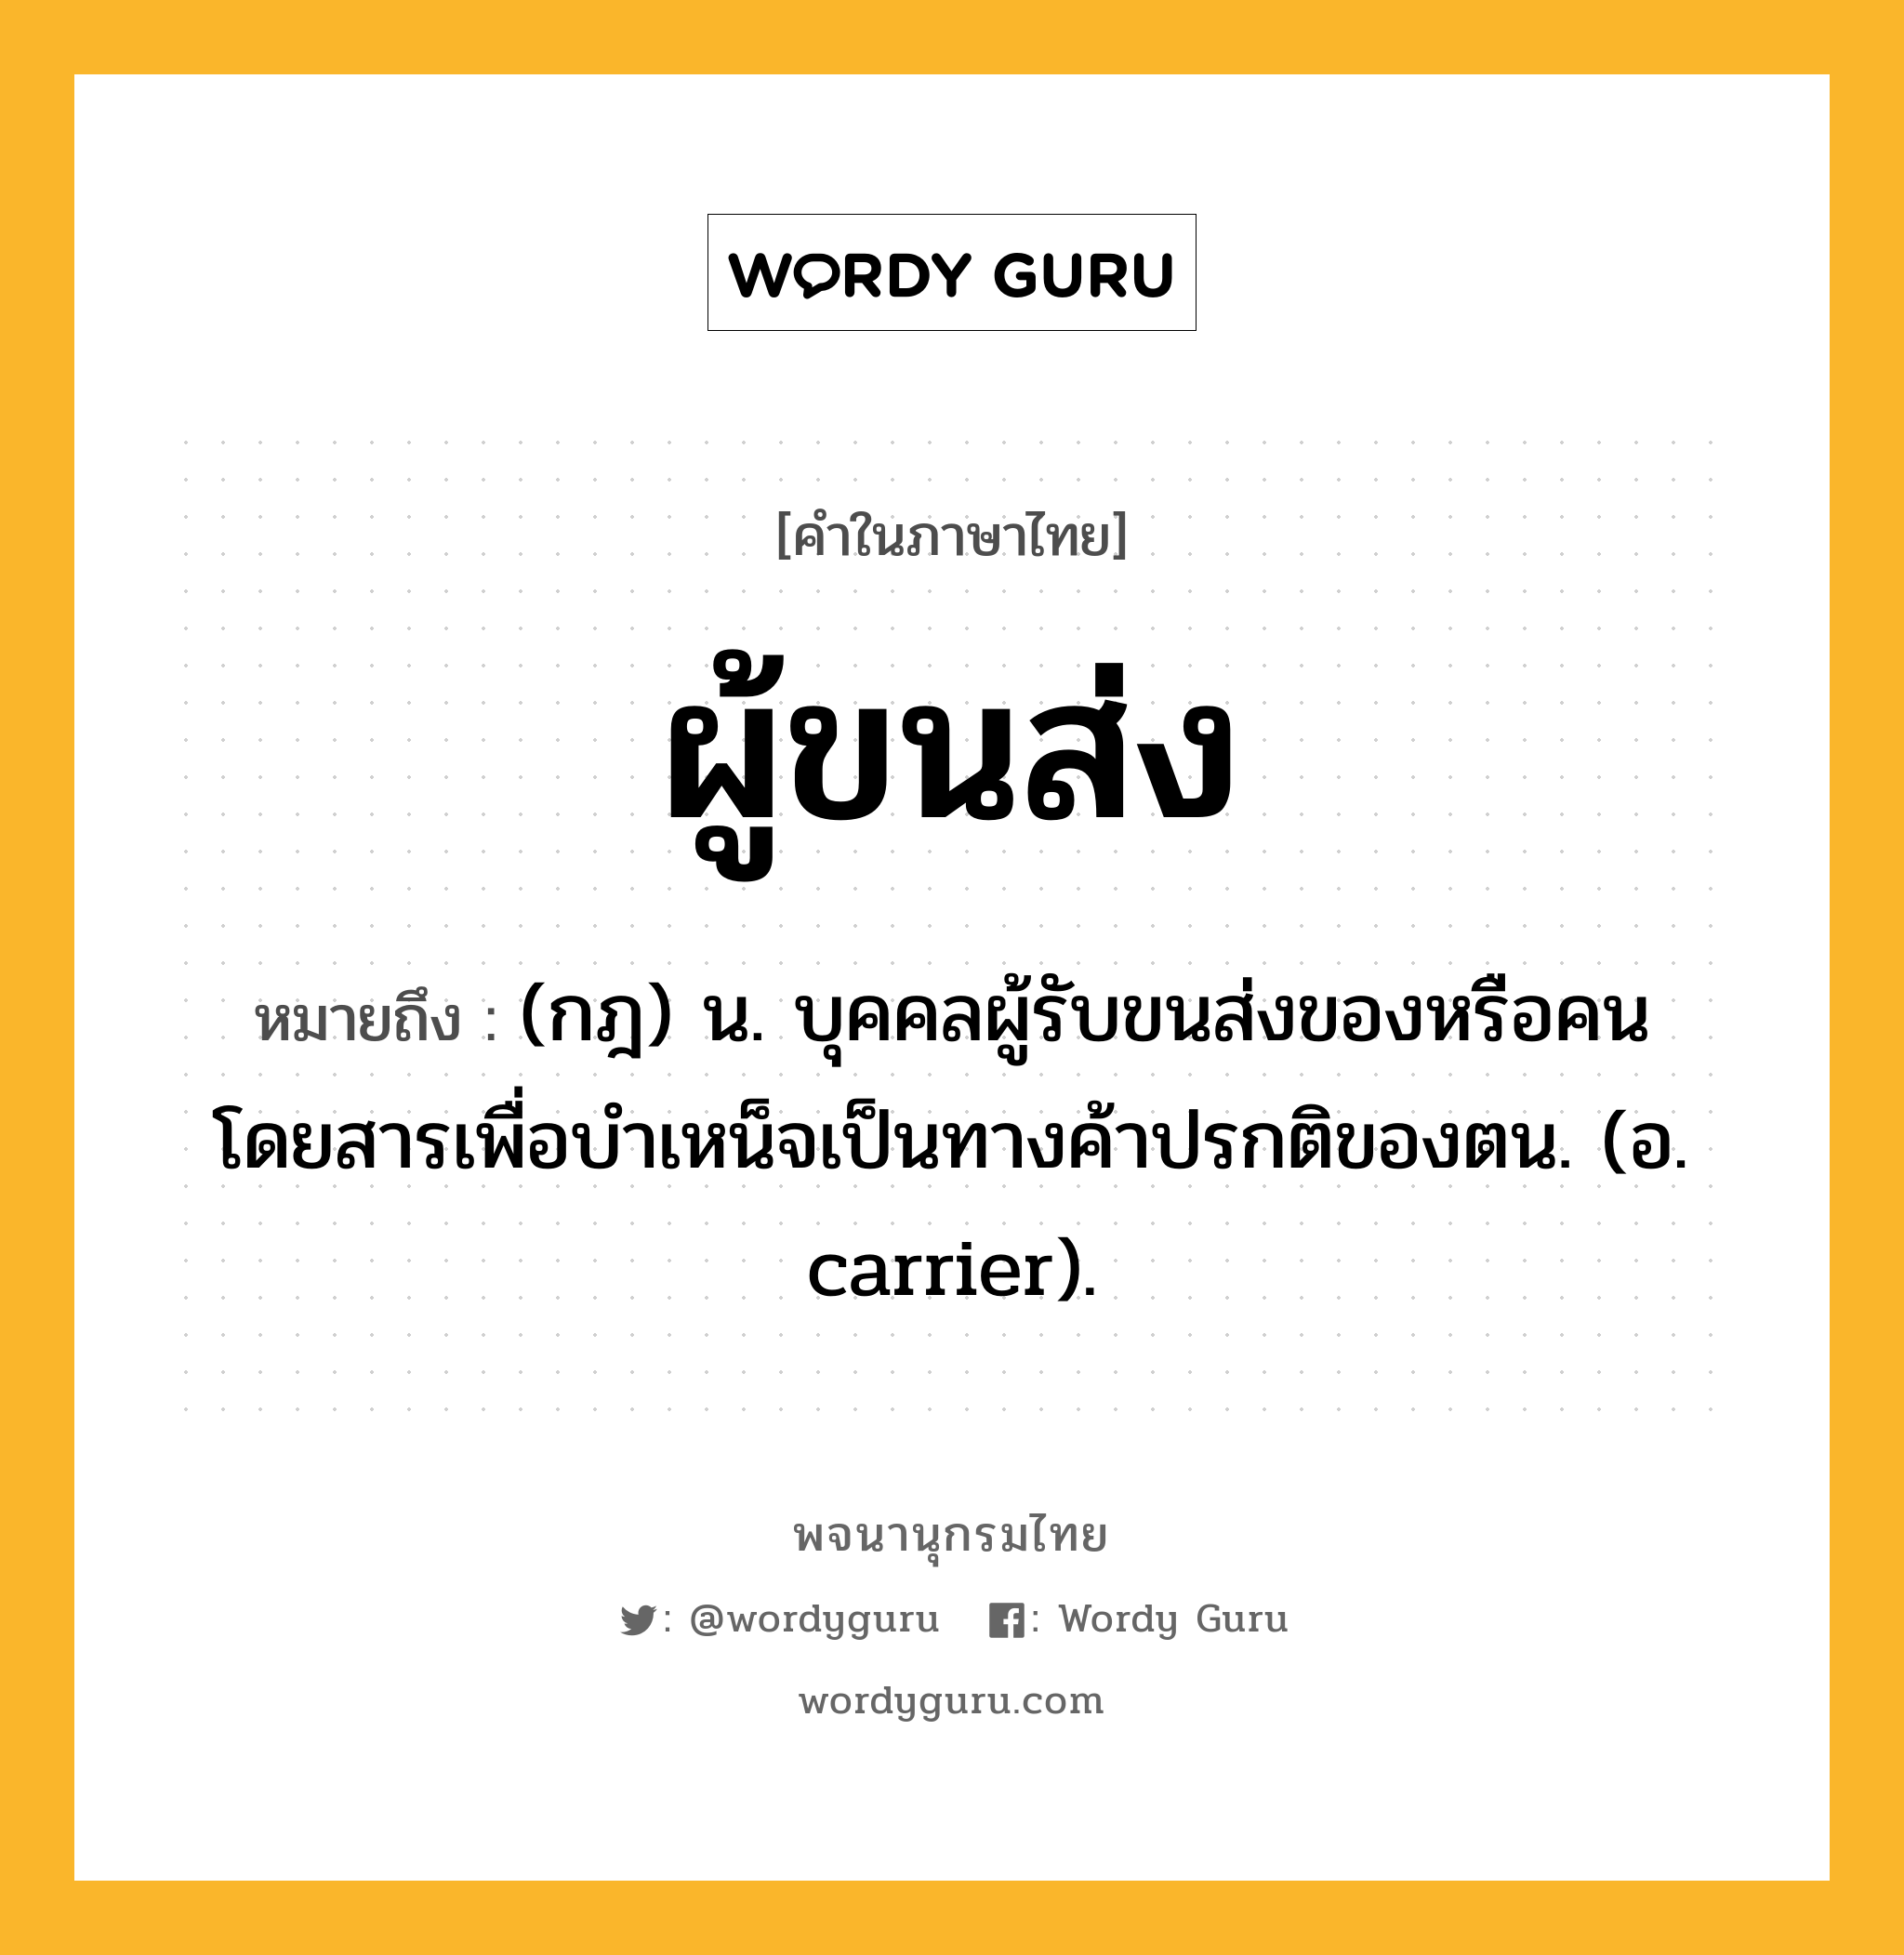 ผู้ขนส่ง หมายถึงอะไร?, คำในภาษาไทย ผู้ขนส่ง หมายถึง (กฎ) น. บุคคลผู้รับขนส่งของหรือคนโดยสารเพื่อบำเหน็จเป็นทางค้าปรกติของตน. (อ. carrier).